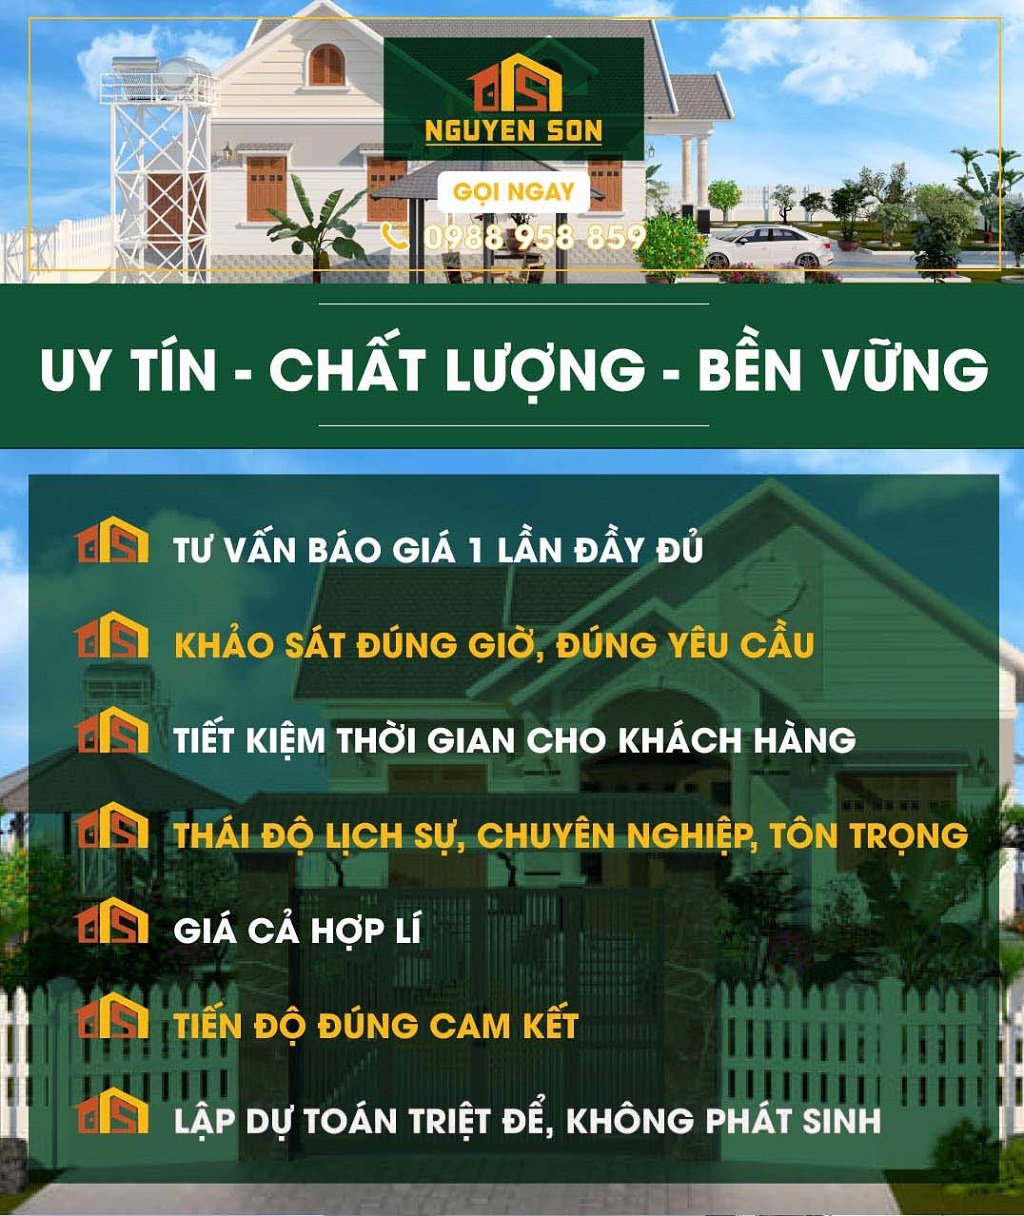 Xây Dựng Nguyễn Sơn được khách hàng tin tưởng và chọn lựa